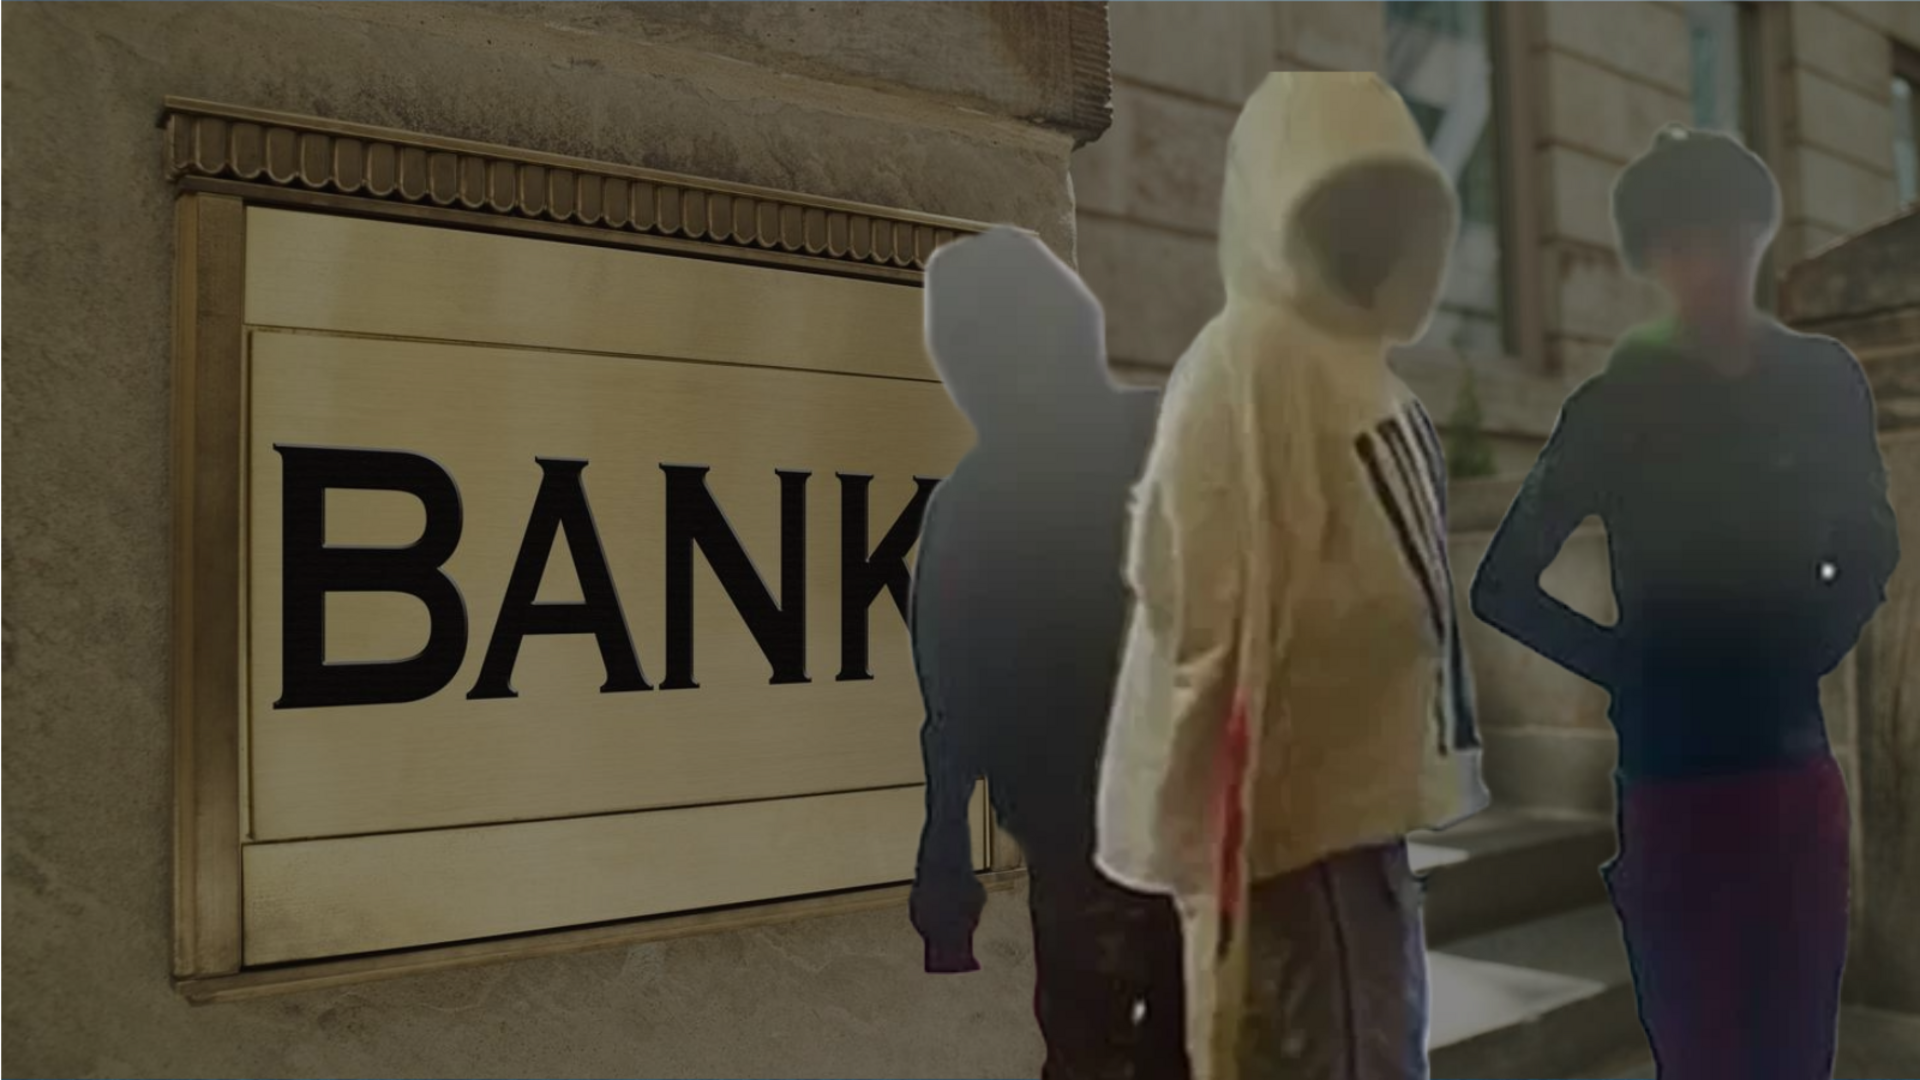 अमेरिका: स्कूल की छुट्टियों में बच्चों ने लूट लिया बैंक, अभिभावकों ने खुद पकड़वाया  